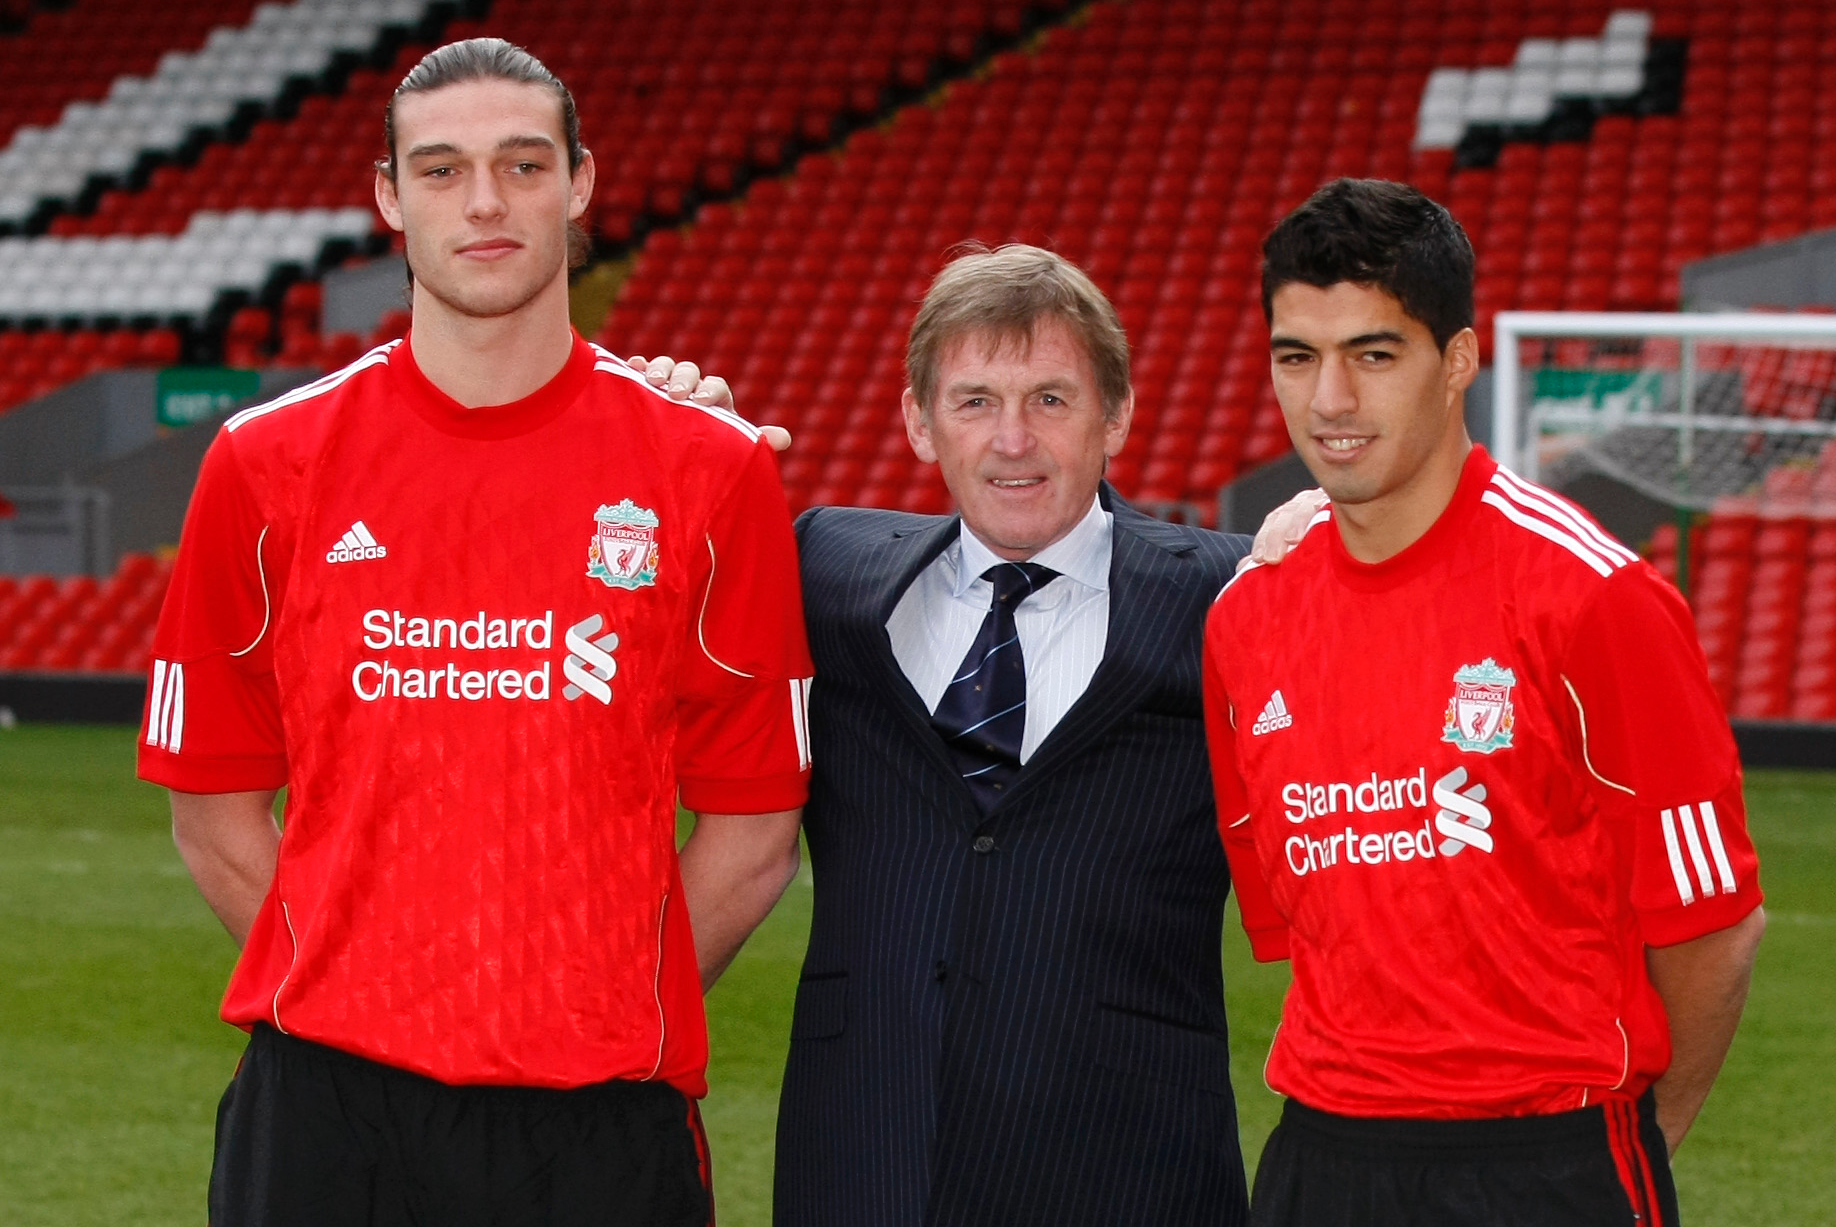 Andy Carroll och Luis Suarez värvades i januari. Nu planerar Liverpool att värva fler superstjärnor.